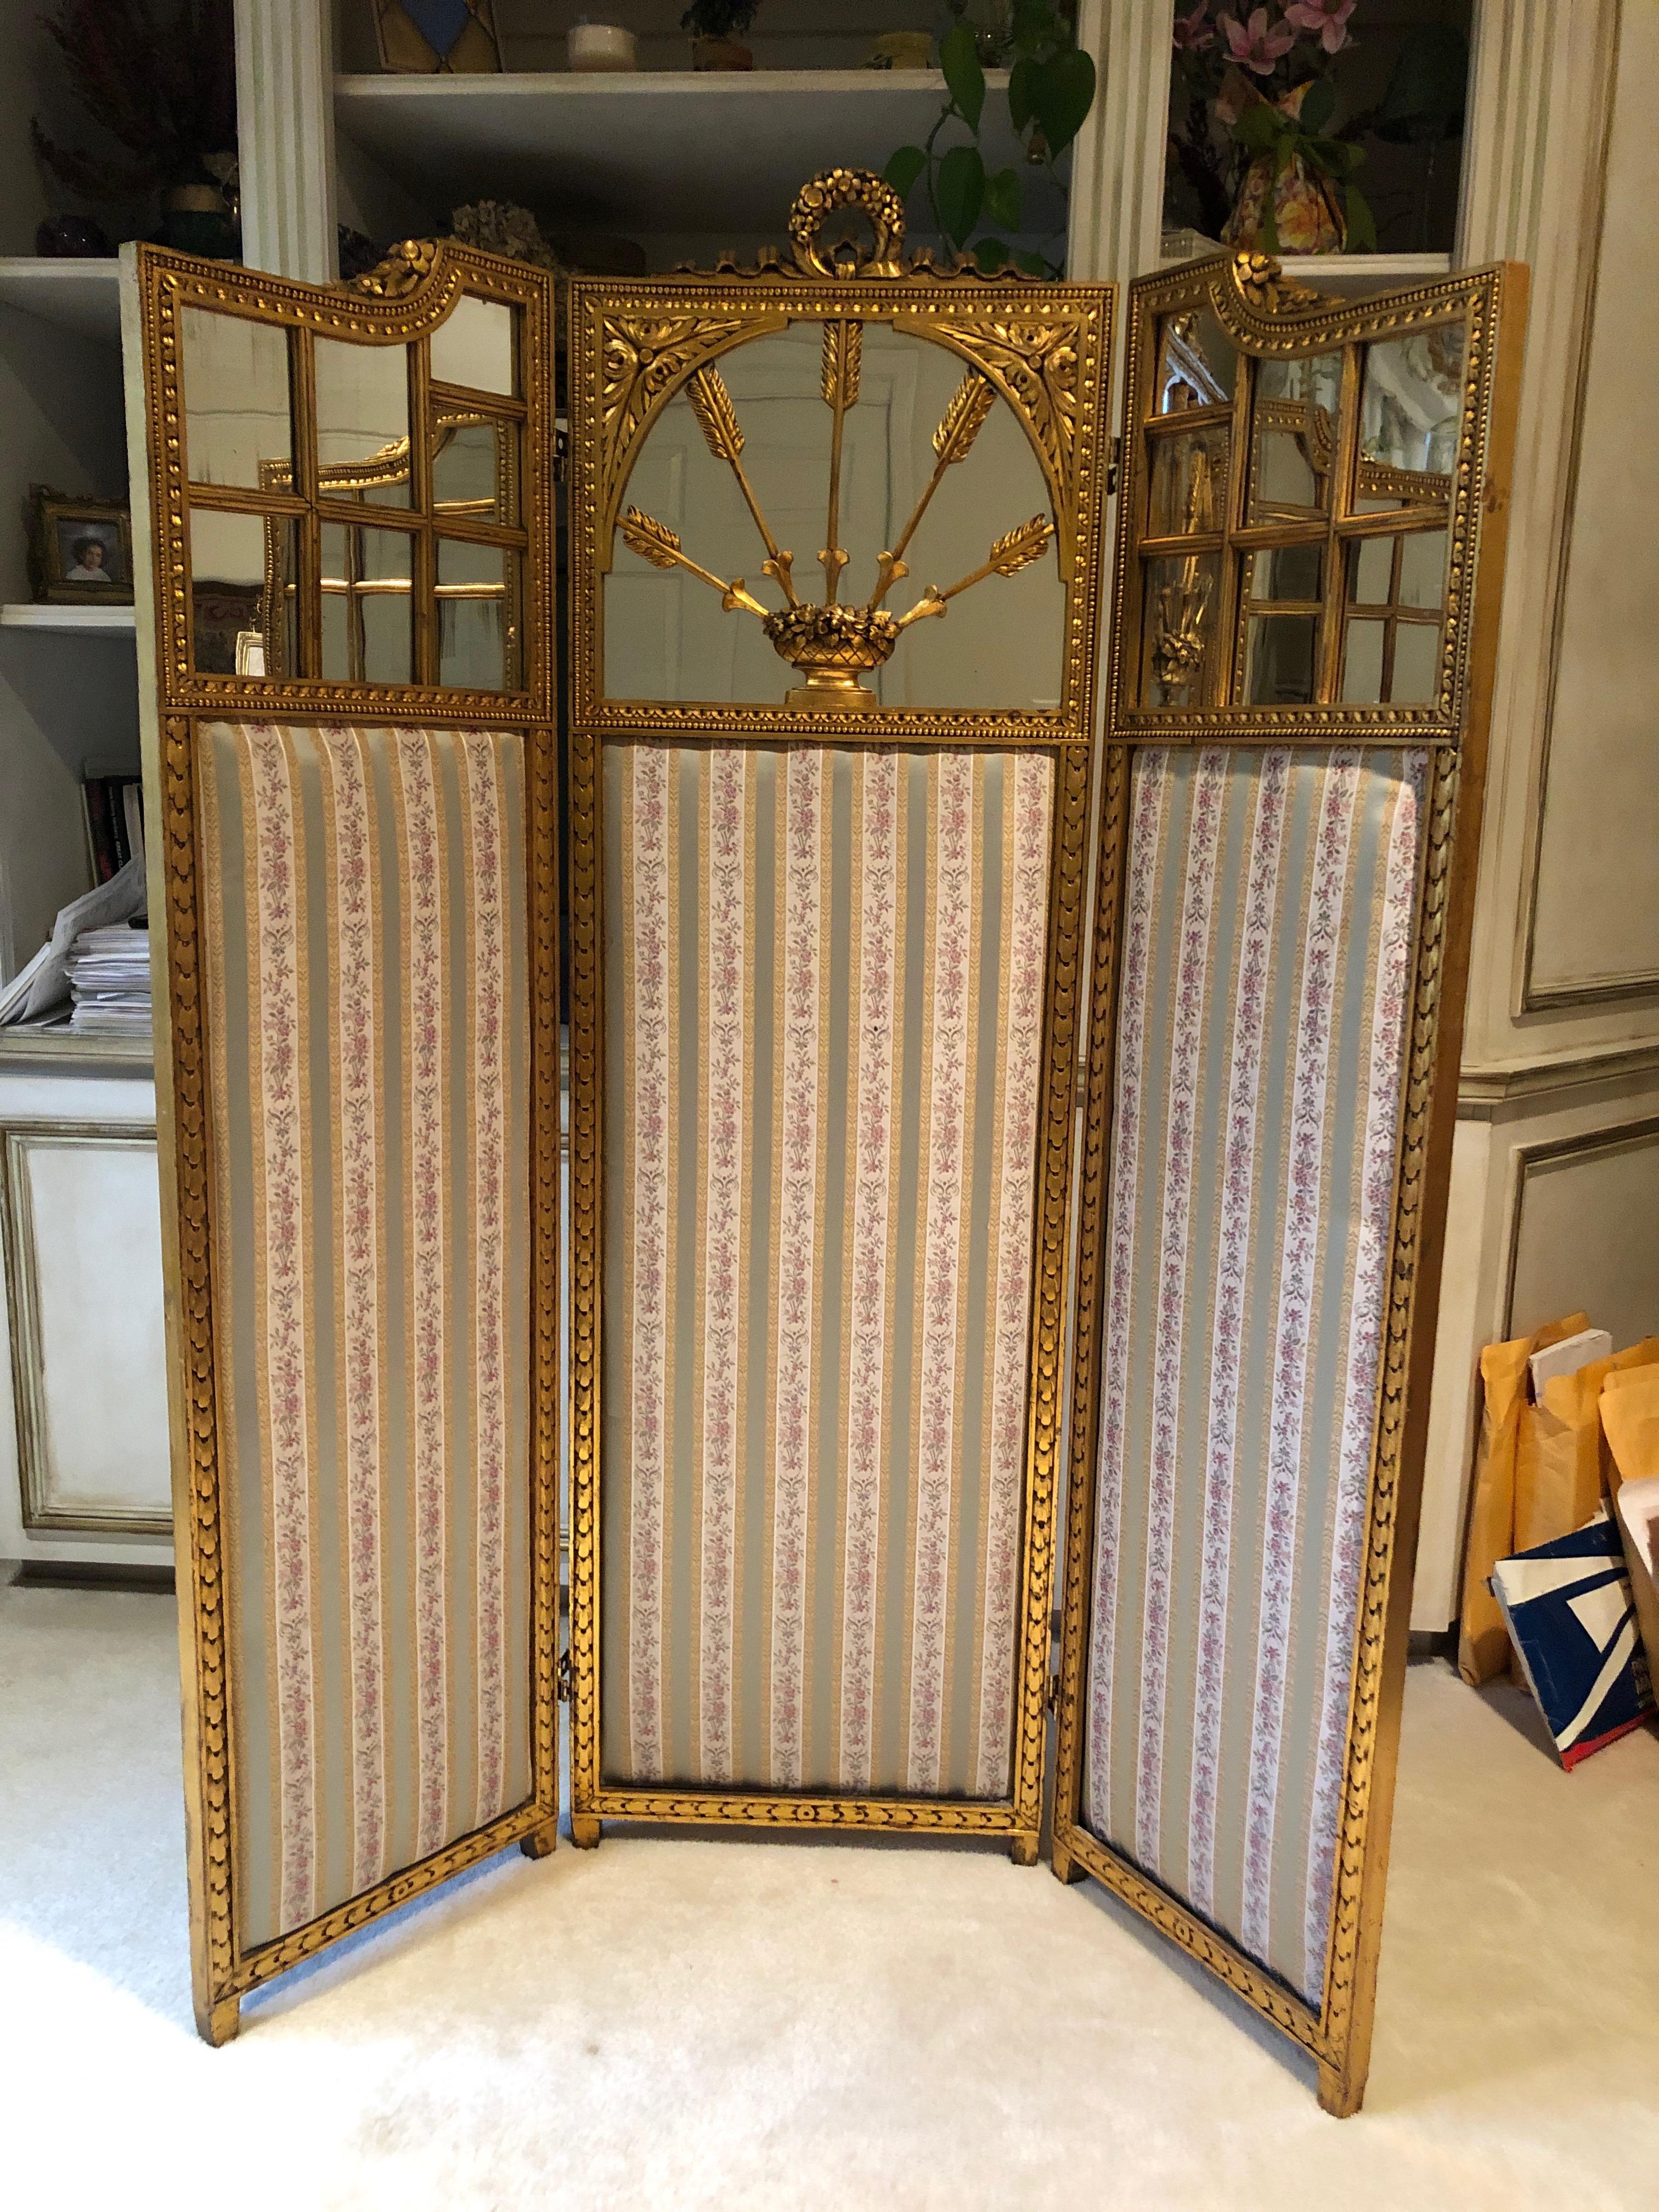 Ein sublim eleganter, vielseitiger antiker französischer neoklassizistischer Paravent mit einer zentralen Tafel, die eine Girlande mit gekräuselten Bändern über einer quadratischen, verspiegelten Tafel zeigt, die mit laufenden Perlen und